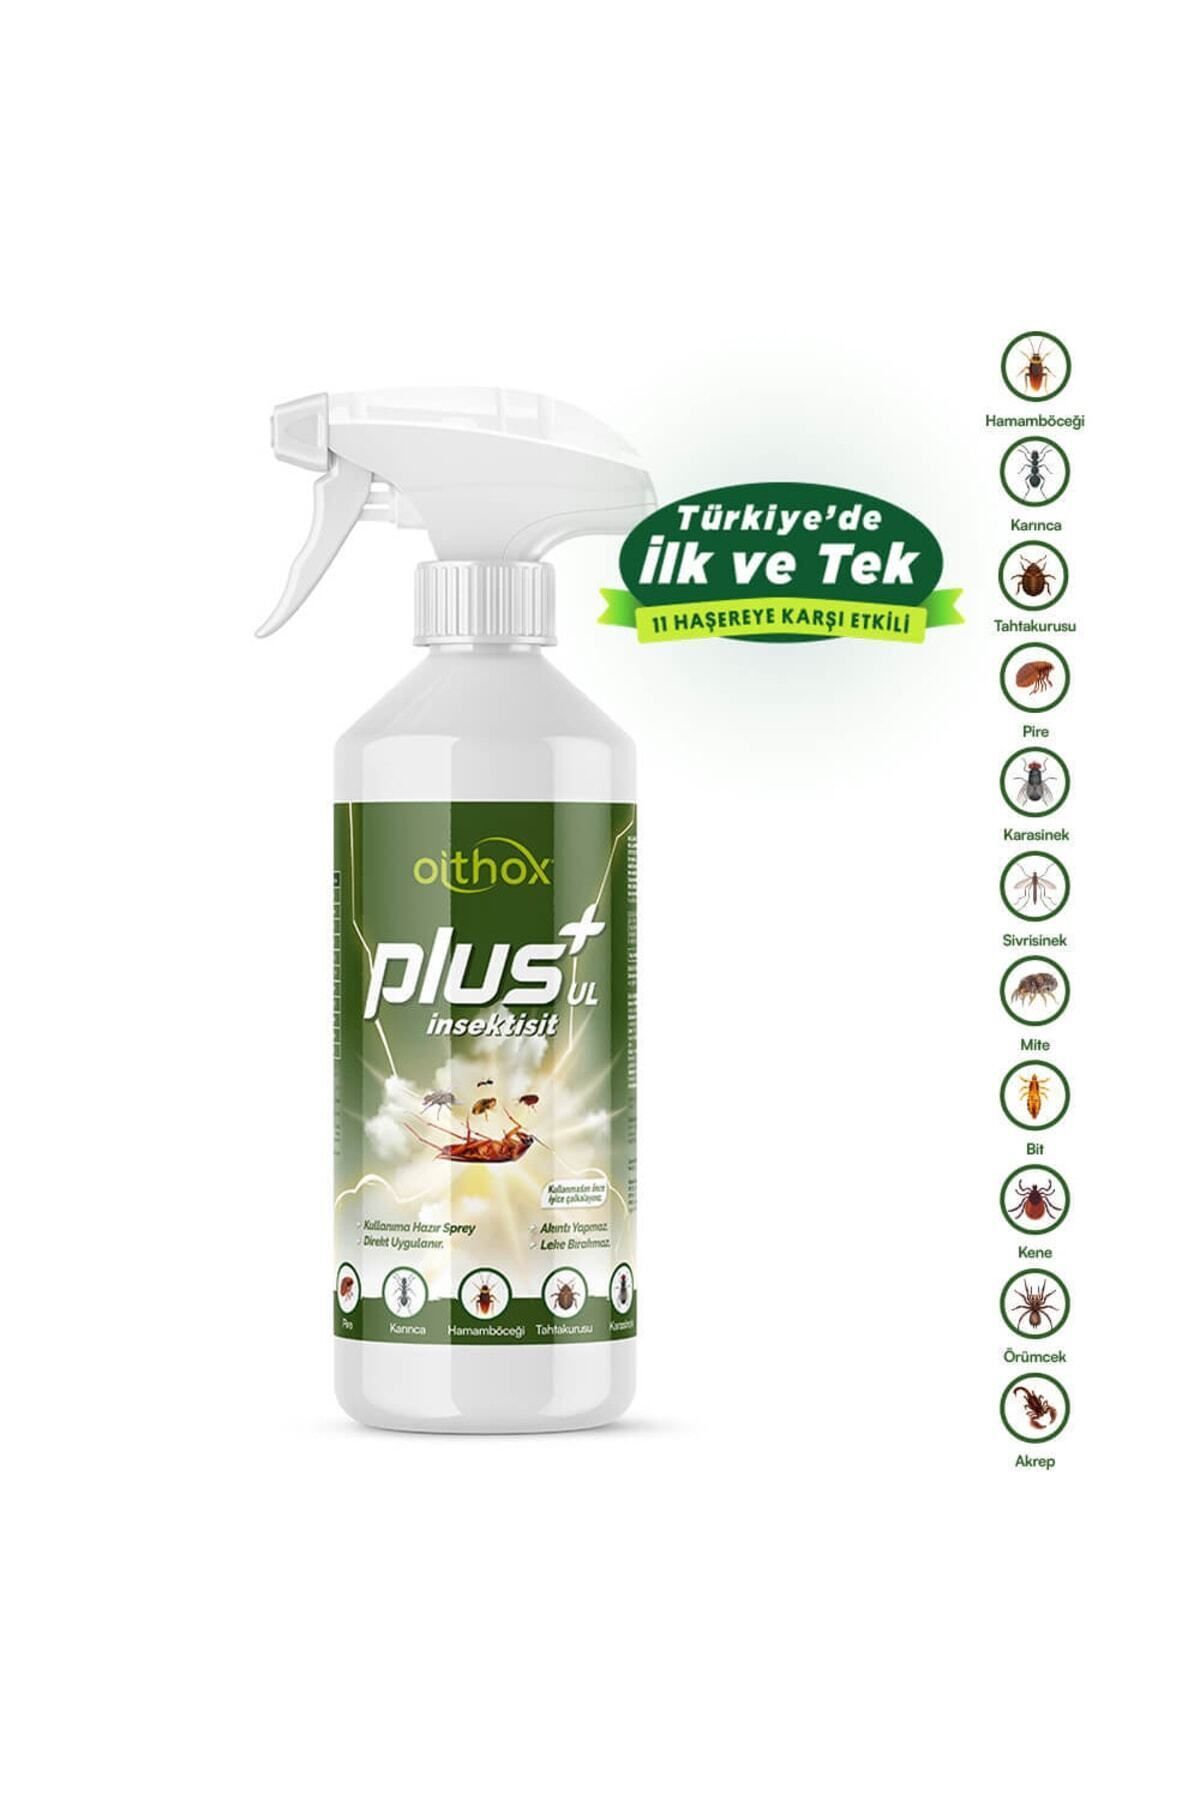 Oithox Plus Ul Insektisit Uyuz ,böcek, Pire, Örümcek, Bit, Tahta Kurusu, Mite, Hamamböceği Ilacı 500 ml